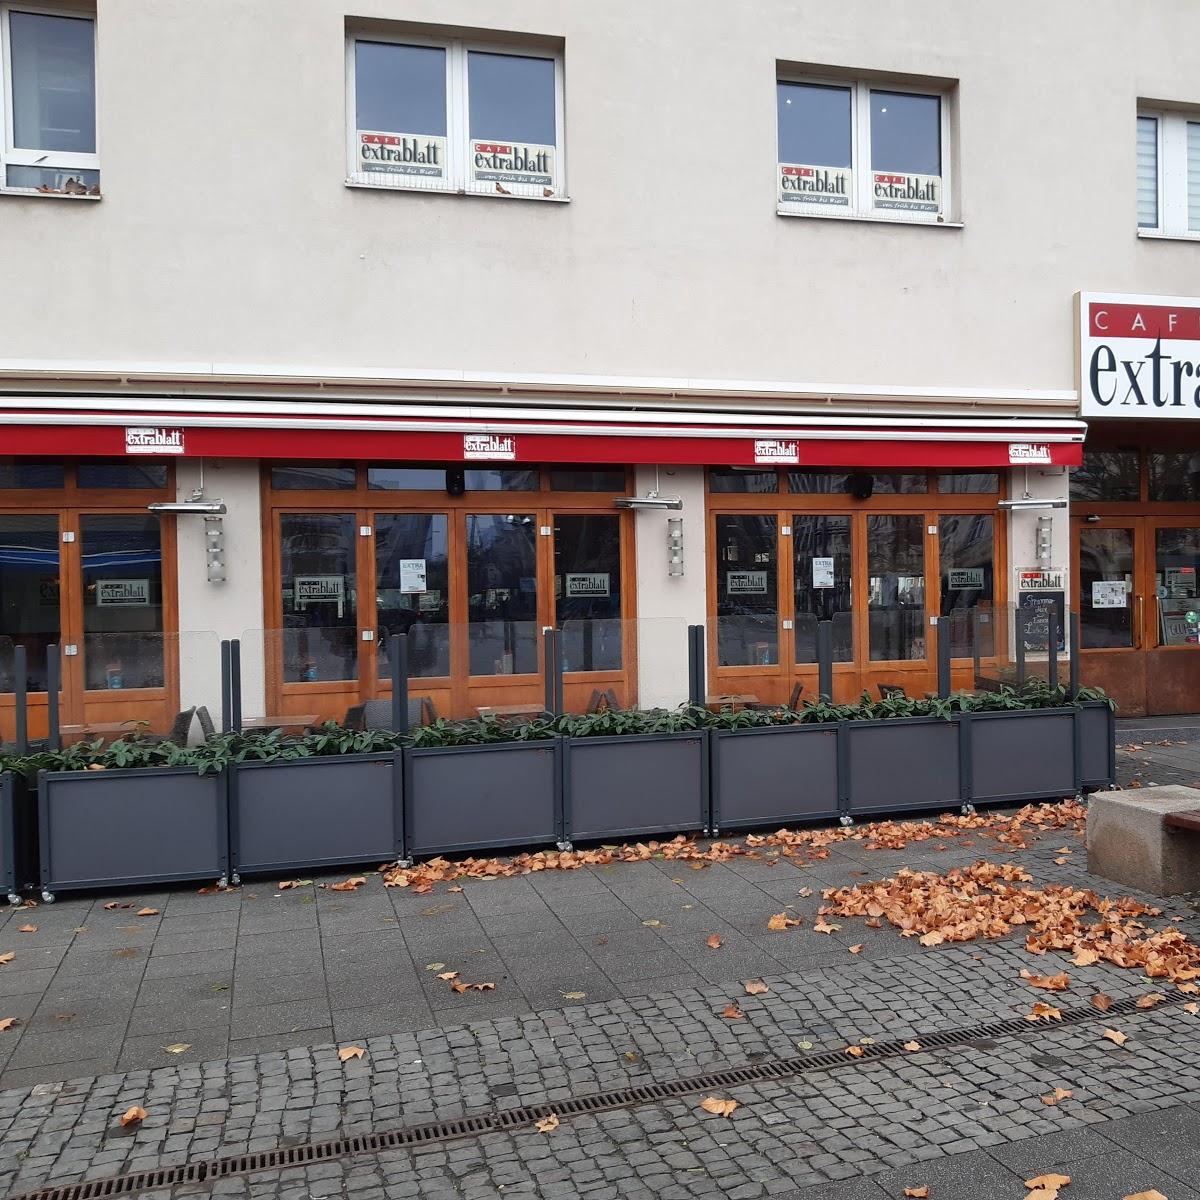 Restaurant "Cafe Extrablatt Frankfurt Bockenheim" in Frankfurt am Main